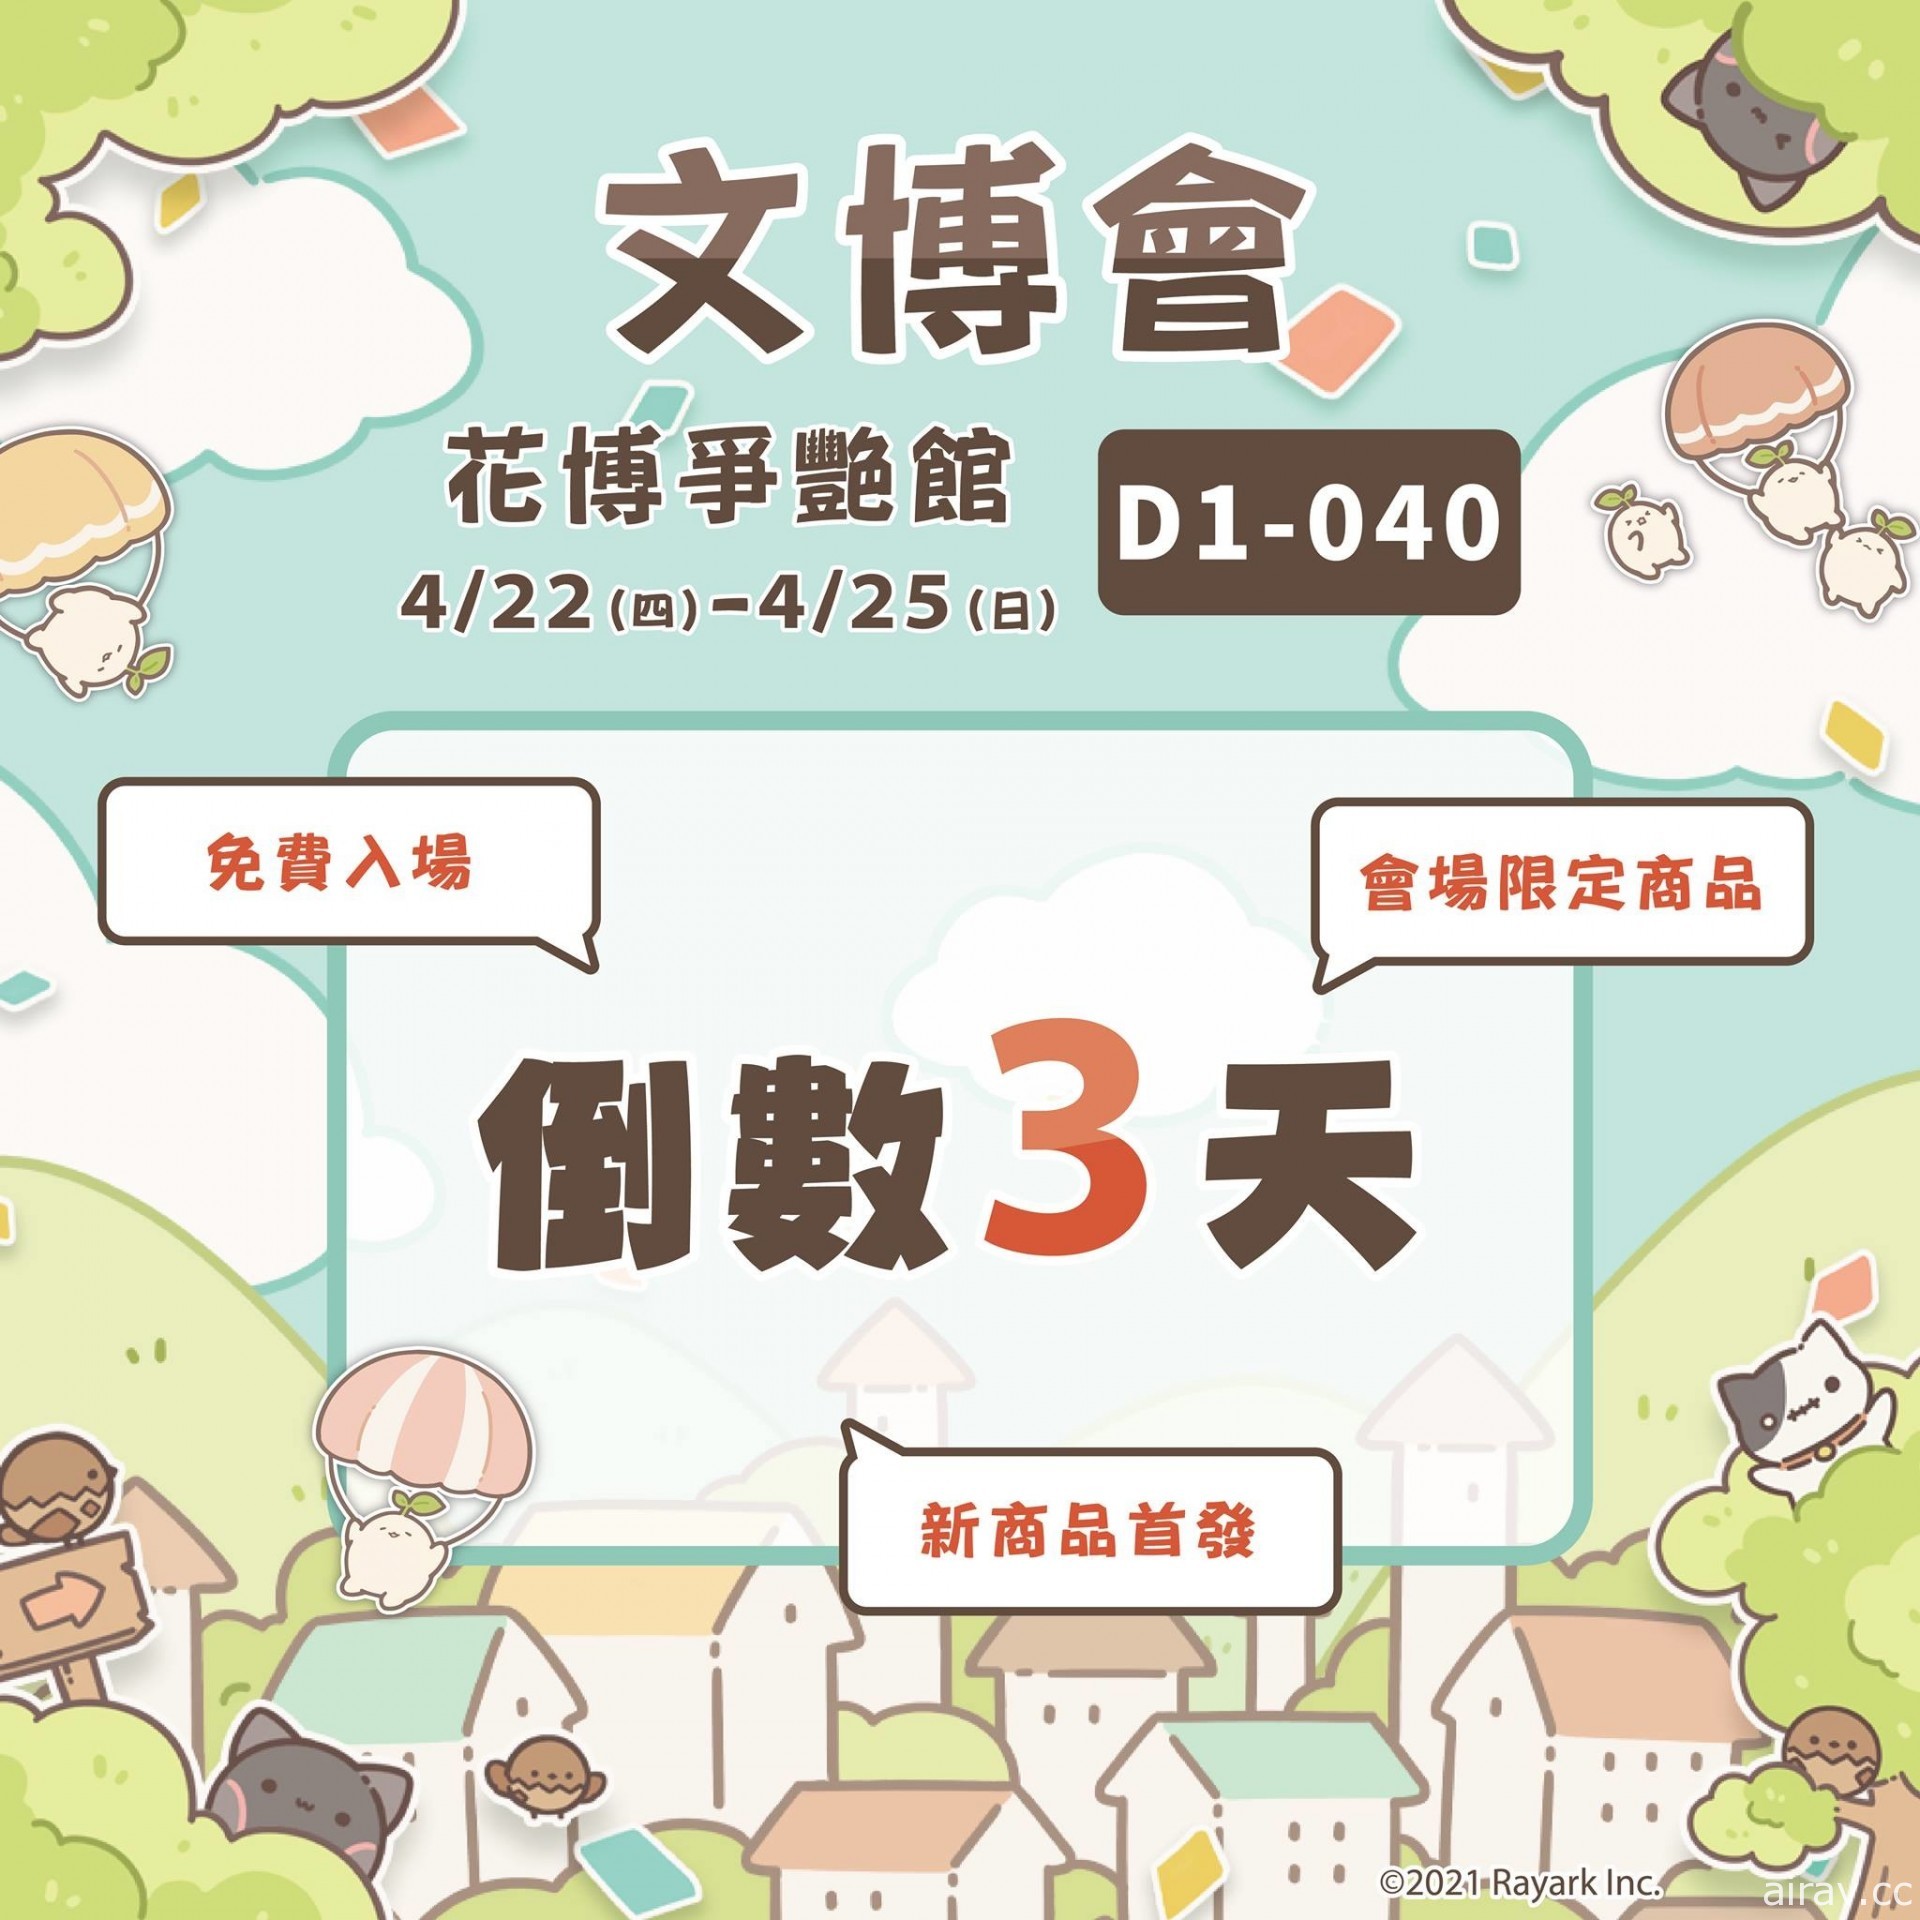 雷亚游戏将于“2021 台湾文博会”展览出展 预计推出限定商品及游戏新商品